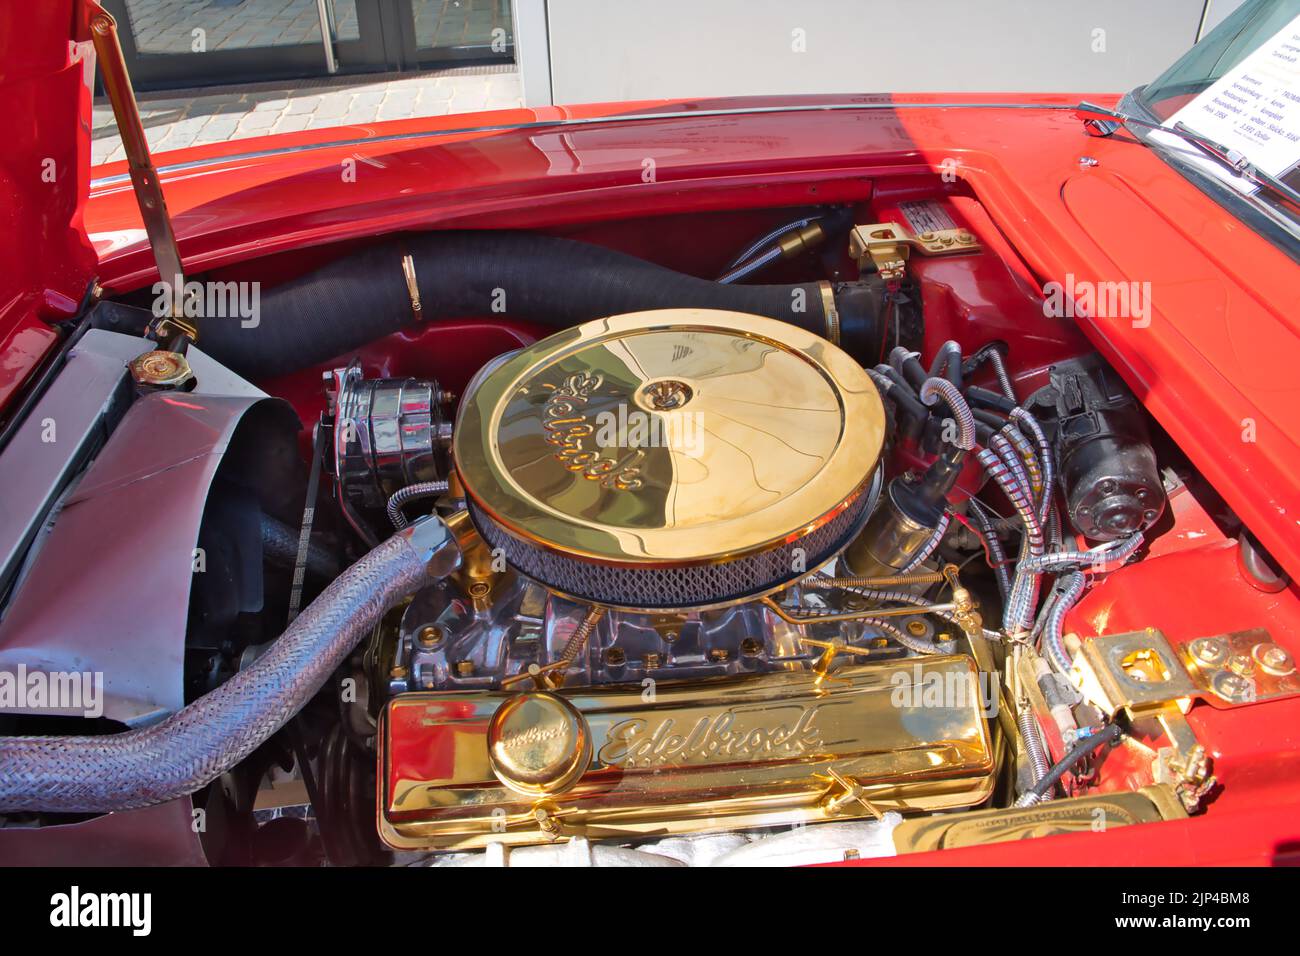 parti motore placcate oro in una chevrolet corvette degli anni sessanta alla fiera oldtimer di colonia, vista vano motore Foto Stock